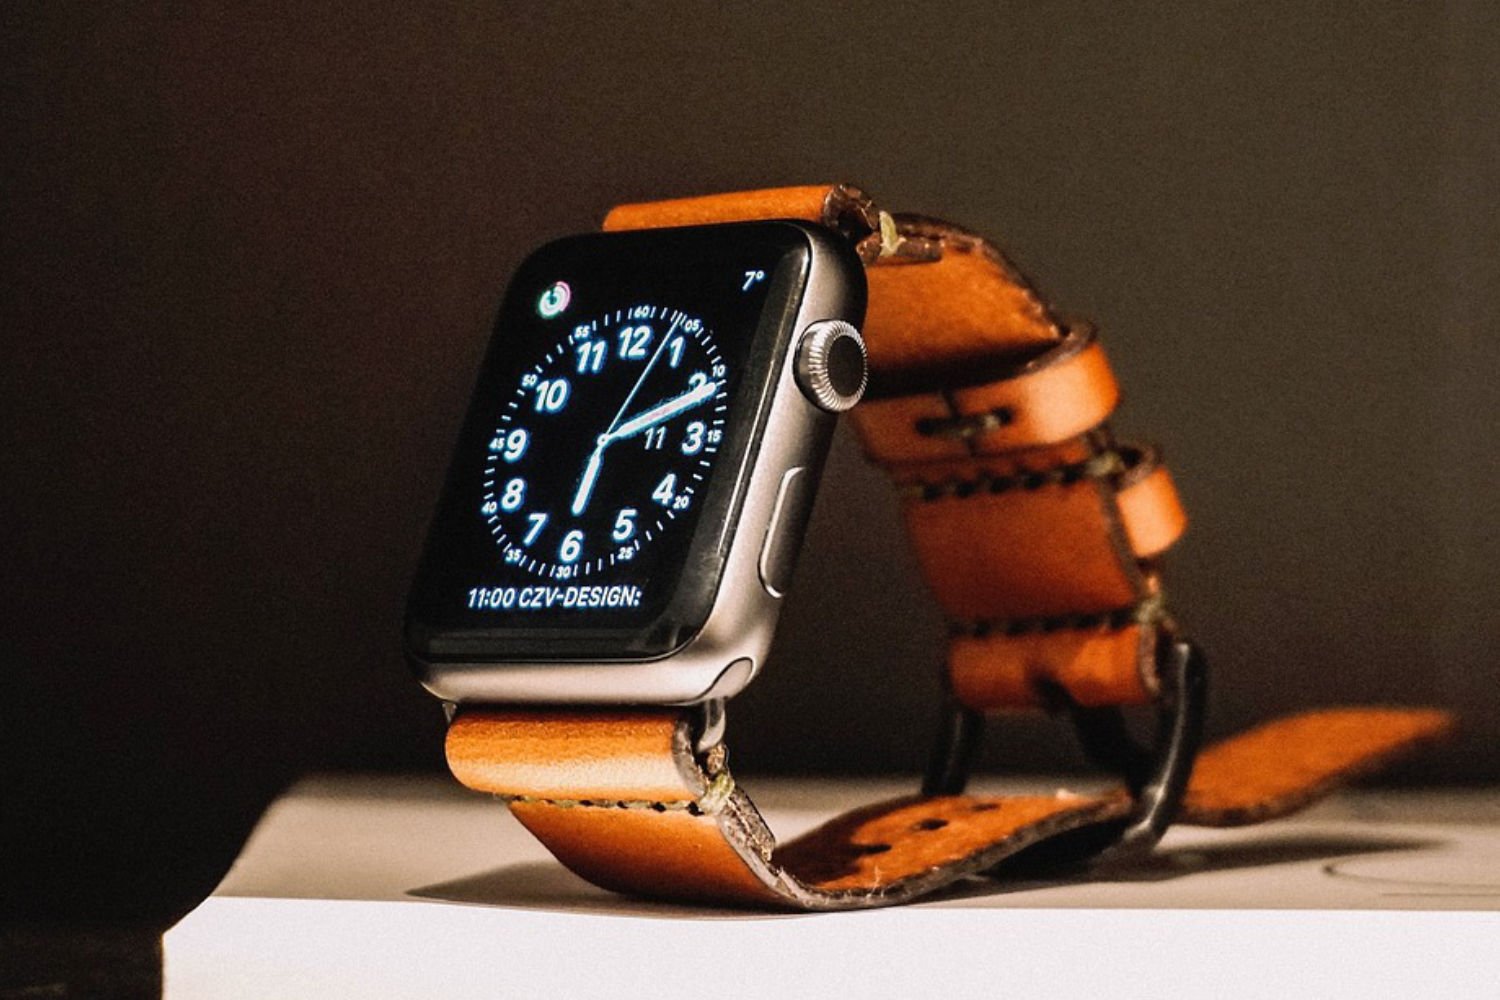 Apple watch montre connecte